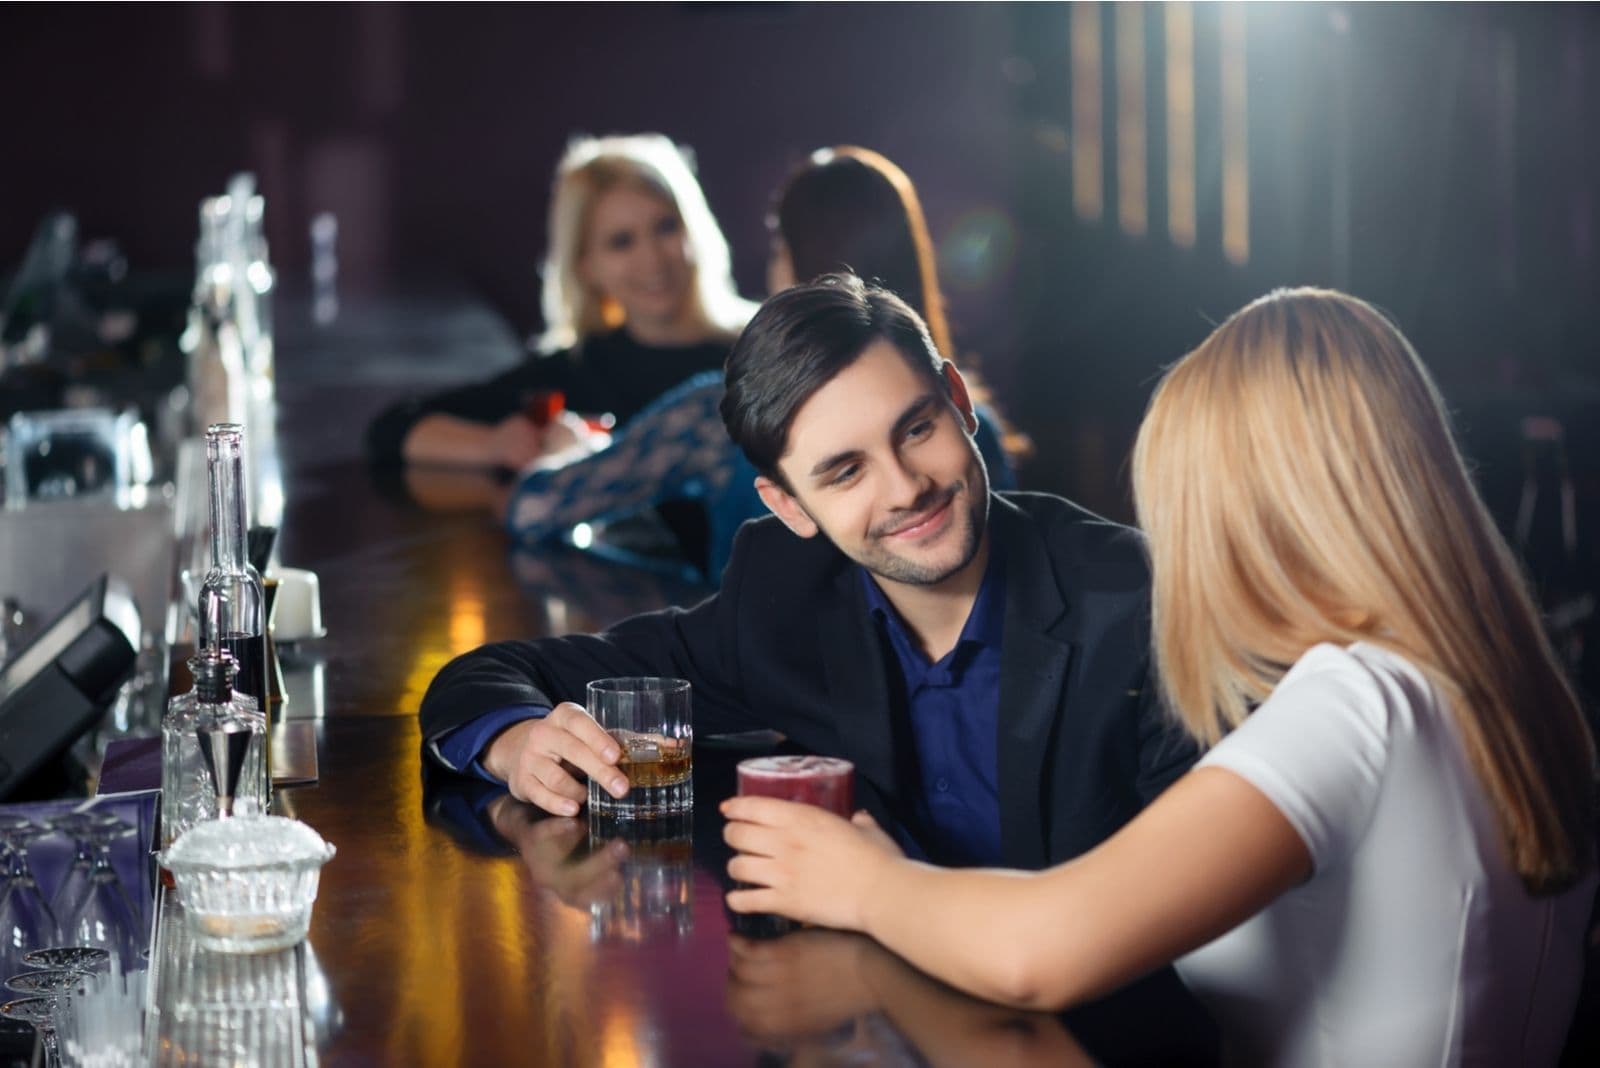 coppia che ha una lunga notte in un bar a bere birra con una lunga chiacchierata felice 